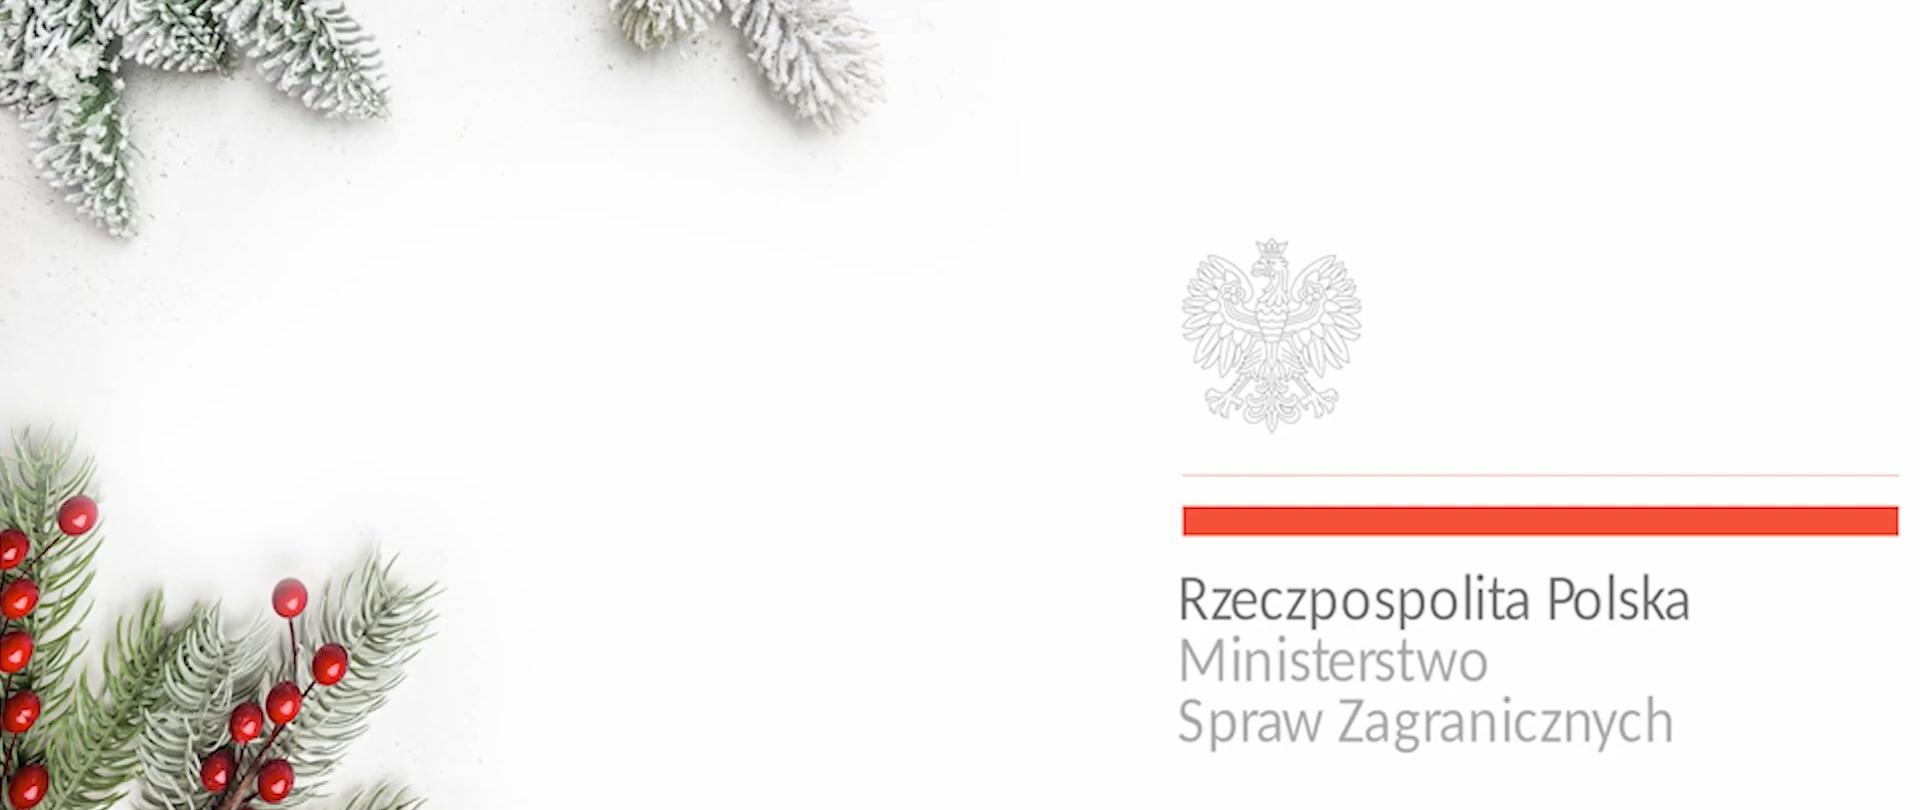 Życzenia świąteczne Ministra Szynkowskiego vel Sęka dla Polonii i Polaków za granicą